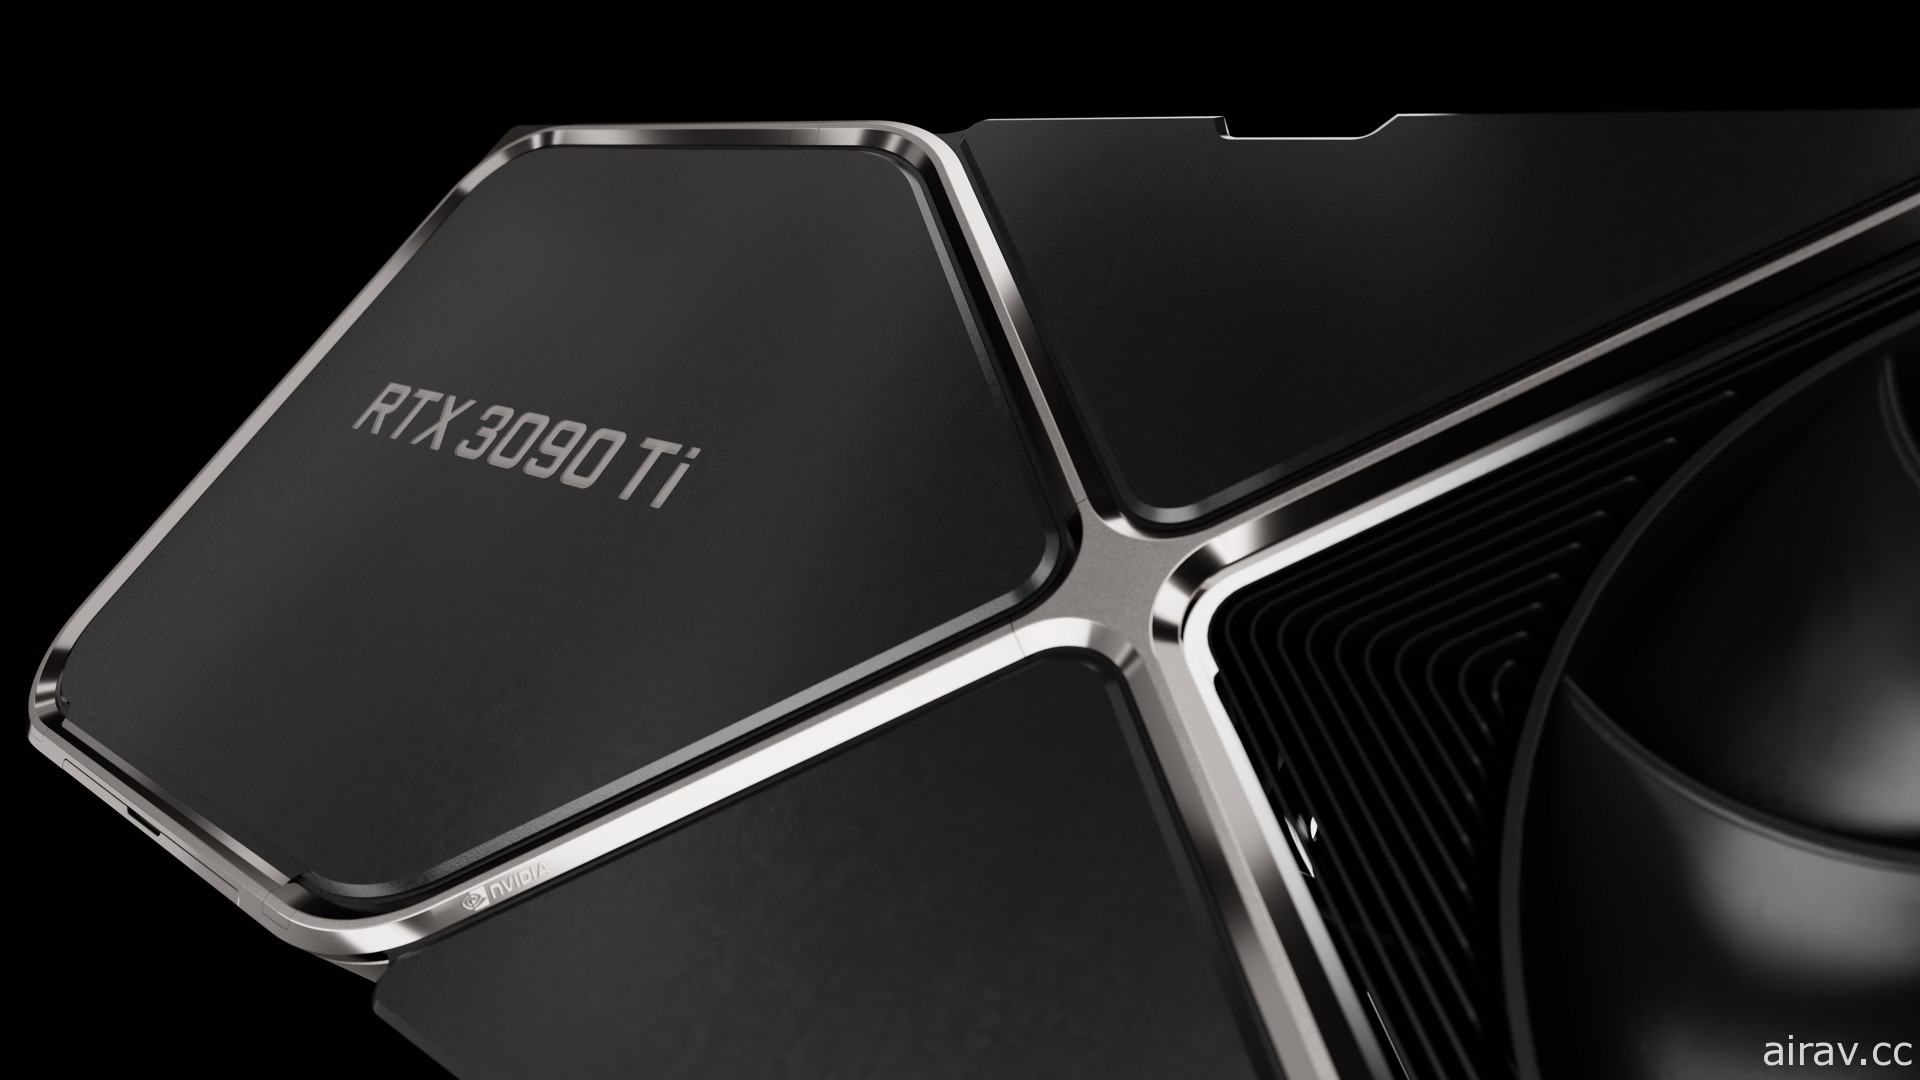 NVIDIA 推出 RTX 30 頂級顯卡「GeForce RTX 3090 Ti」 瞄準追求頂尖效能的創作者和玩家